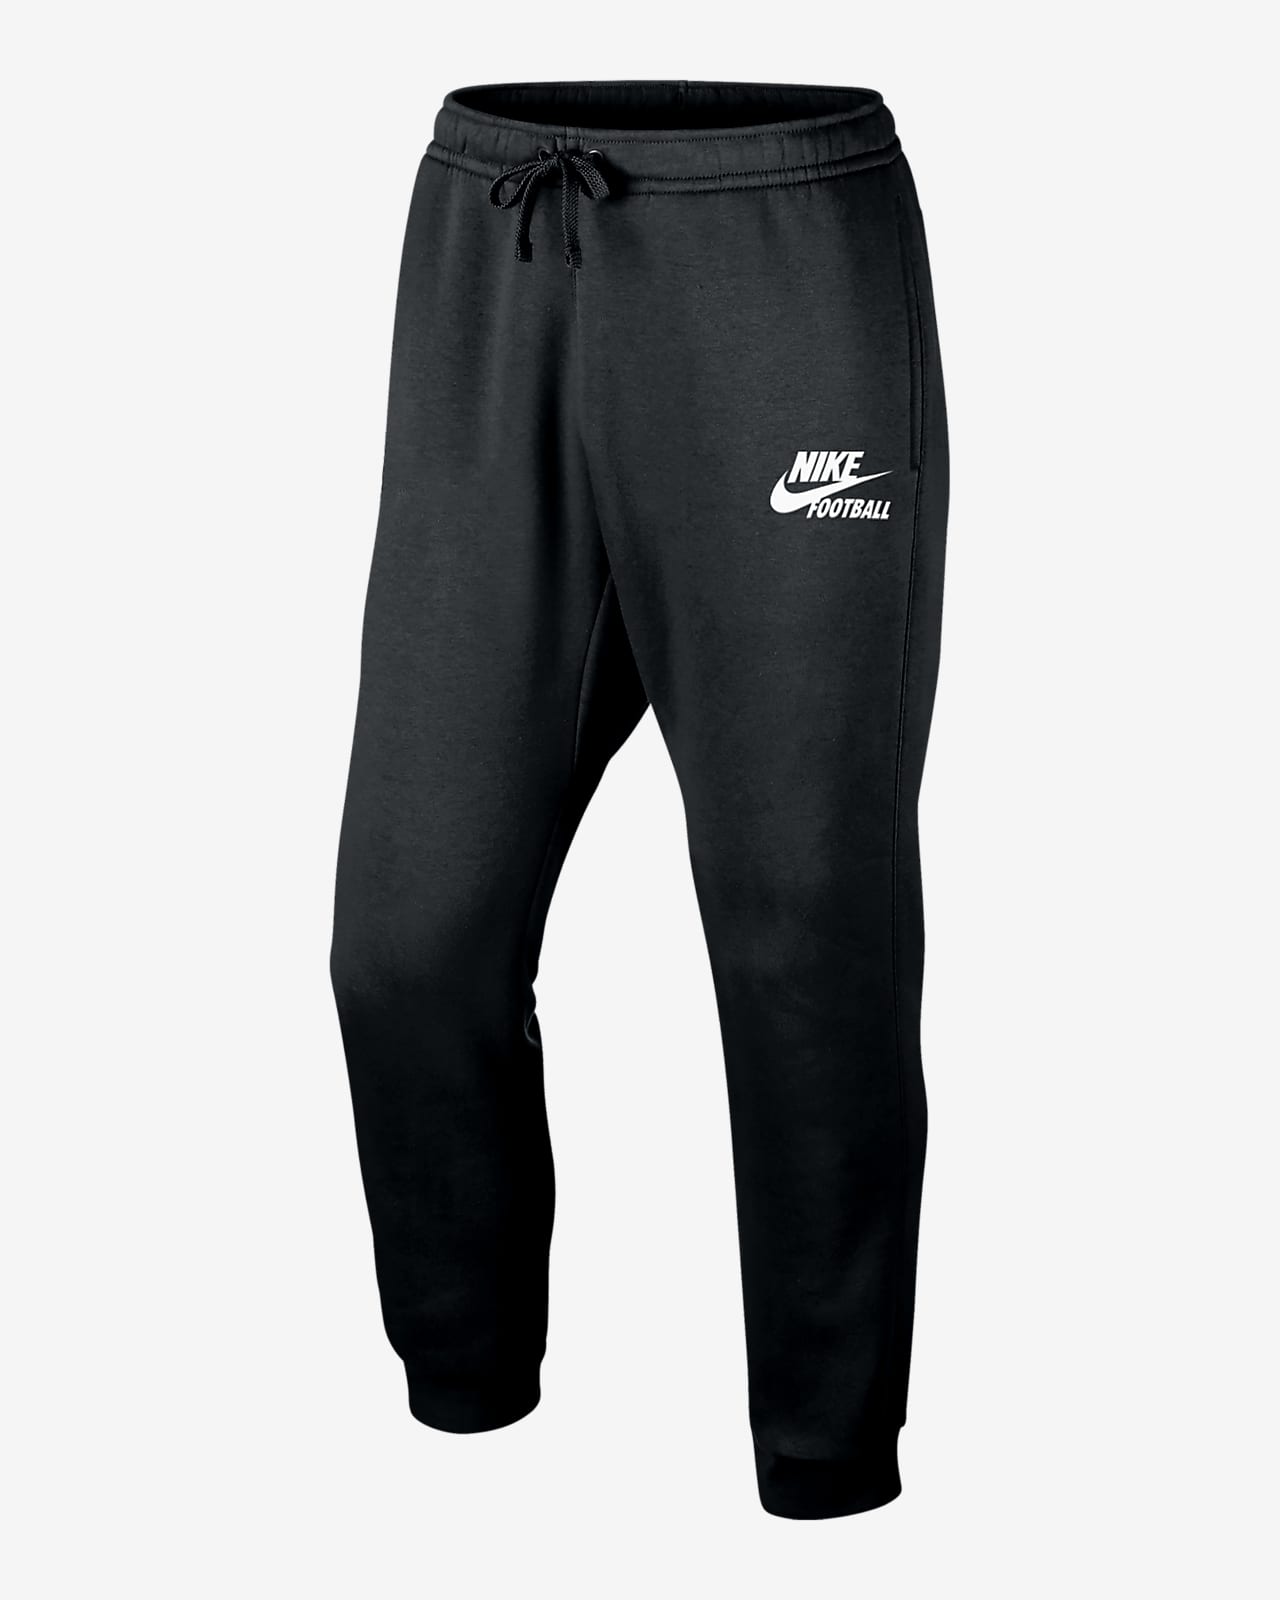 Nike Sportswear Club Fleece Men's Football Pants